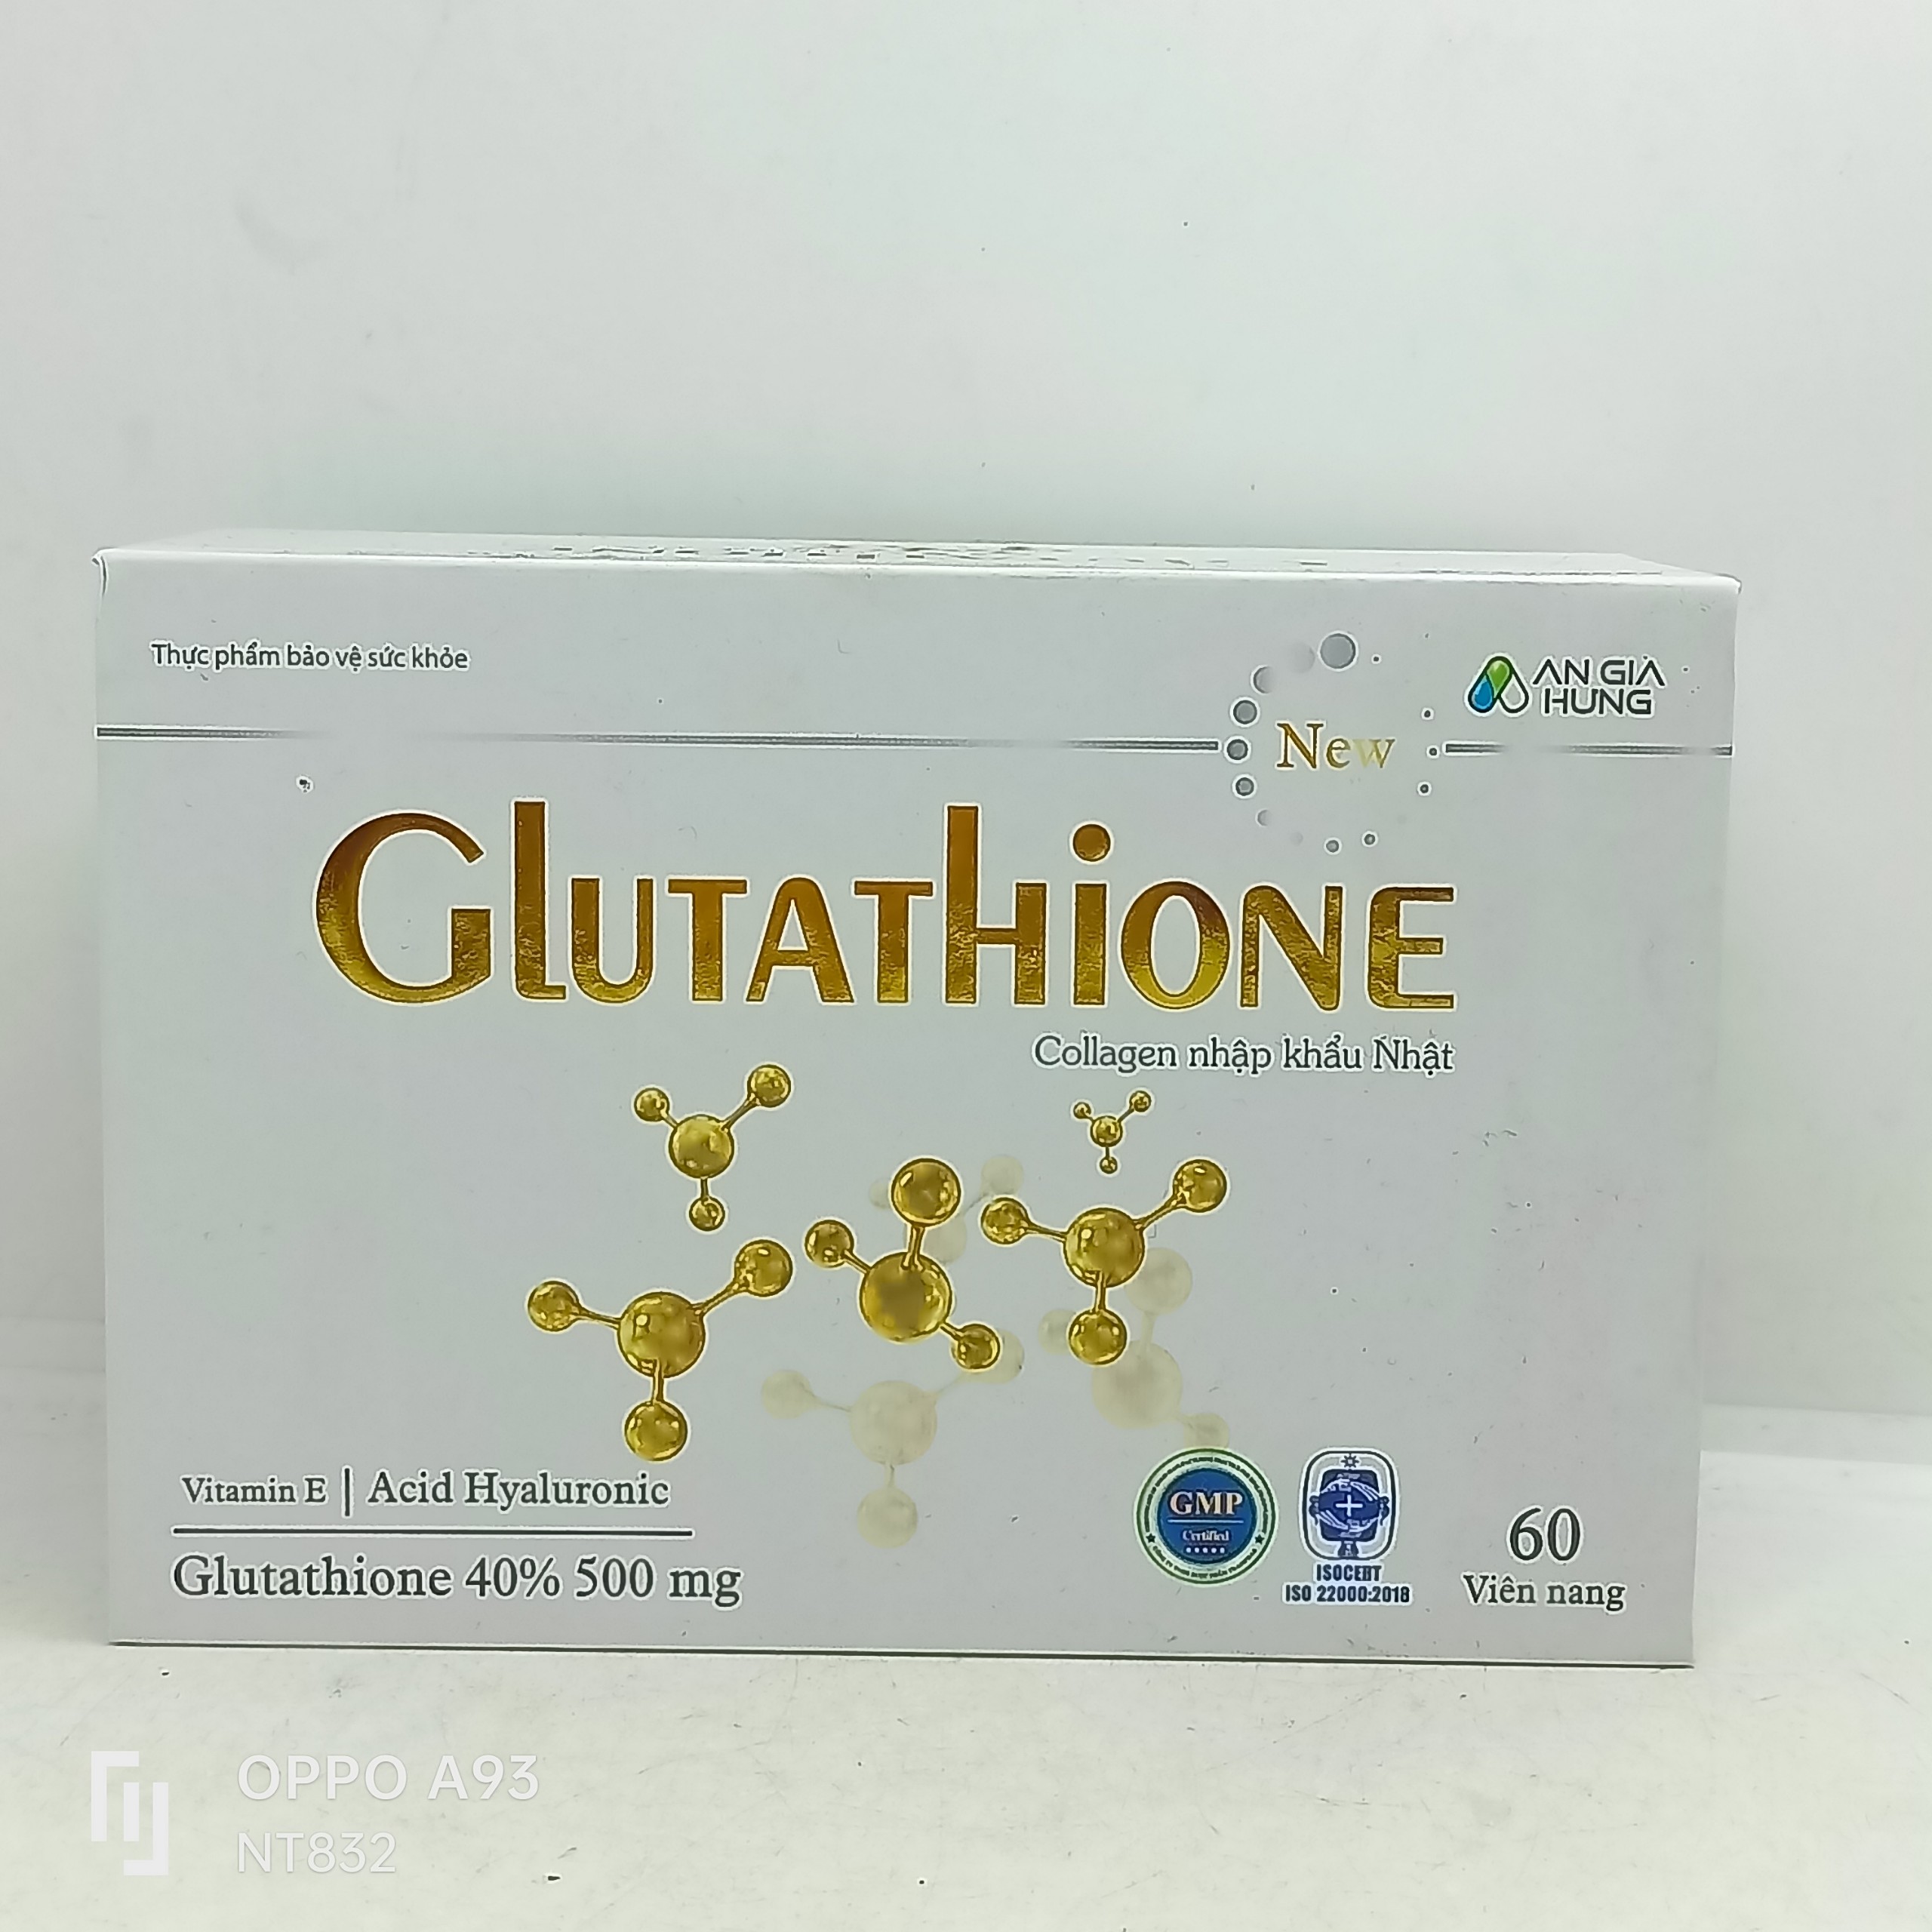 Sạm nám bay nhanh, làn da trắng sáng Glutathione (Collagen nhập khẩu Nhật) hộp 1 lọ 60 viên